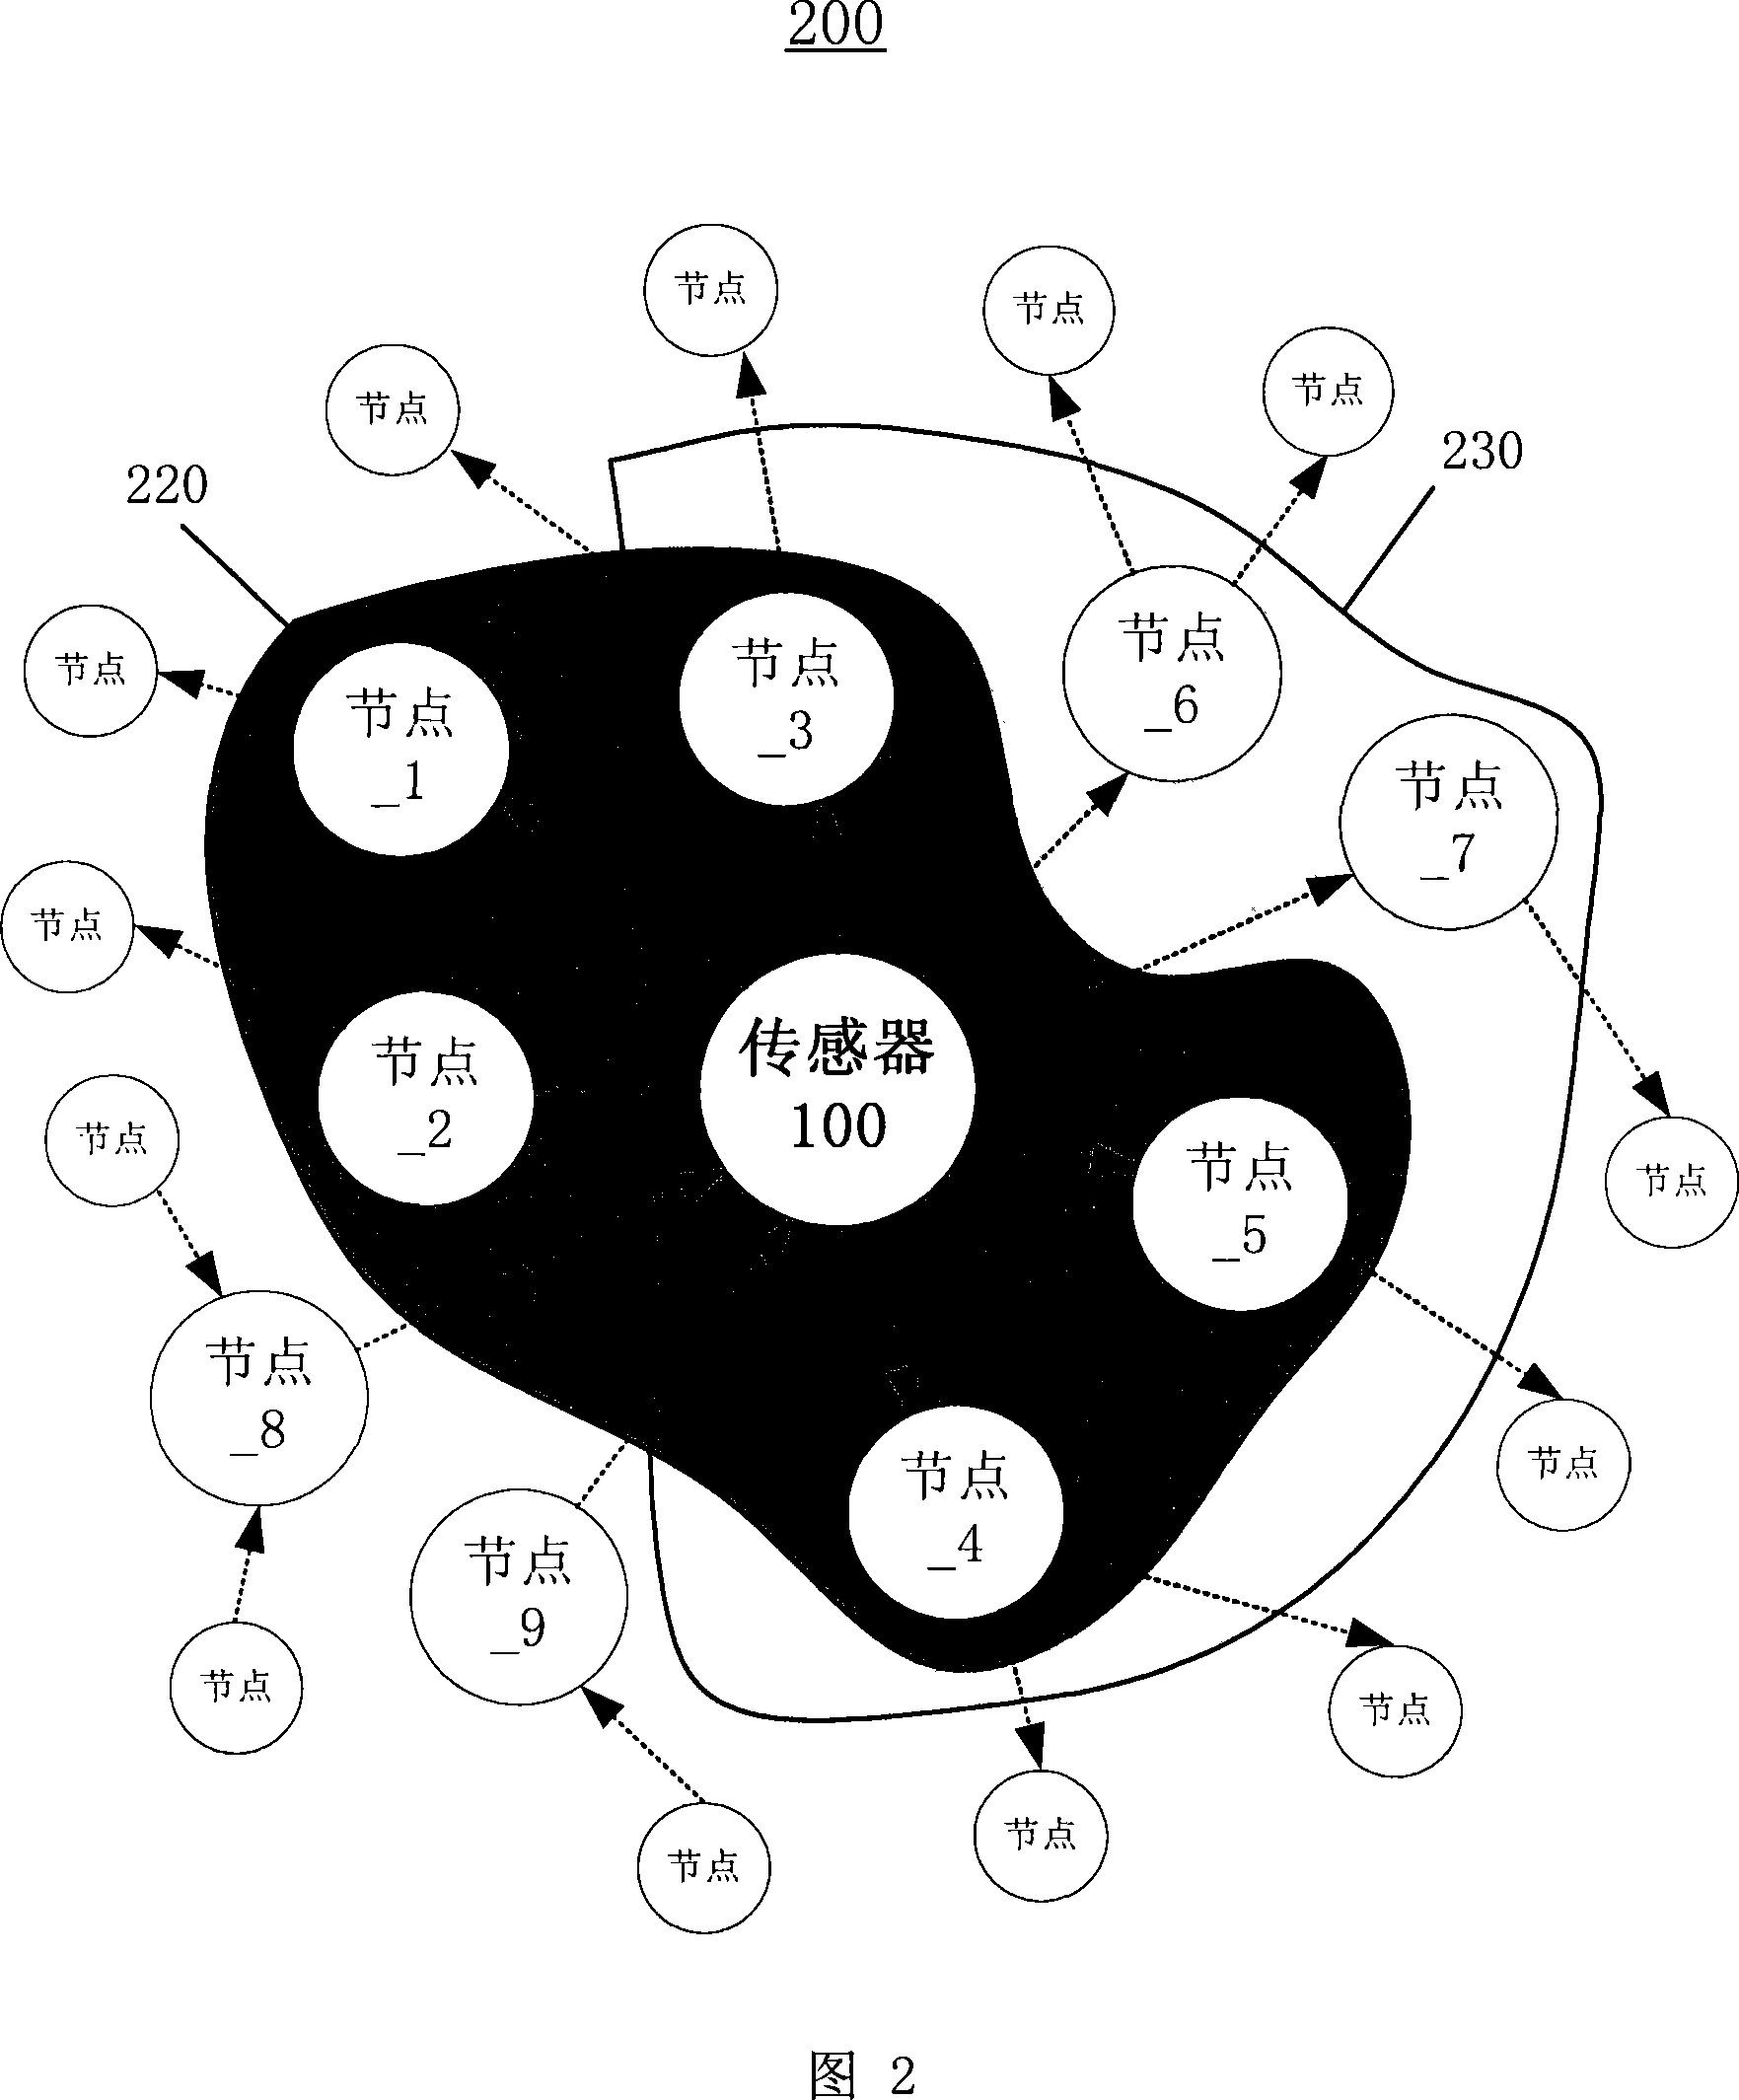 A sensor network